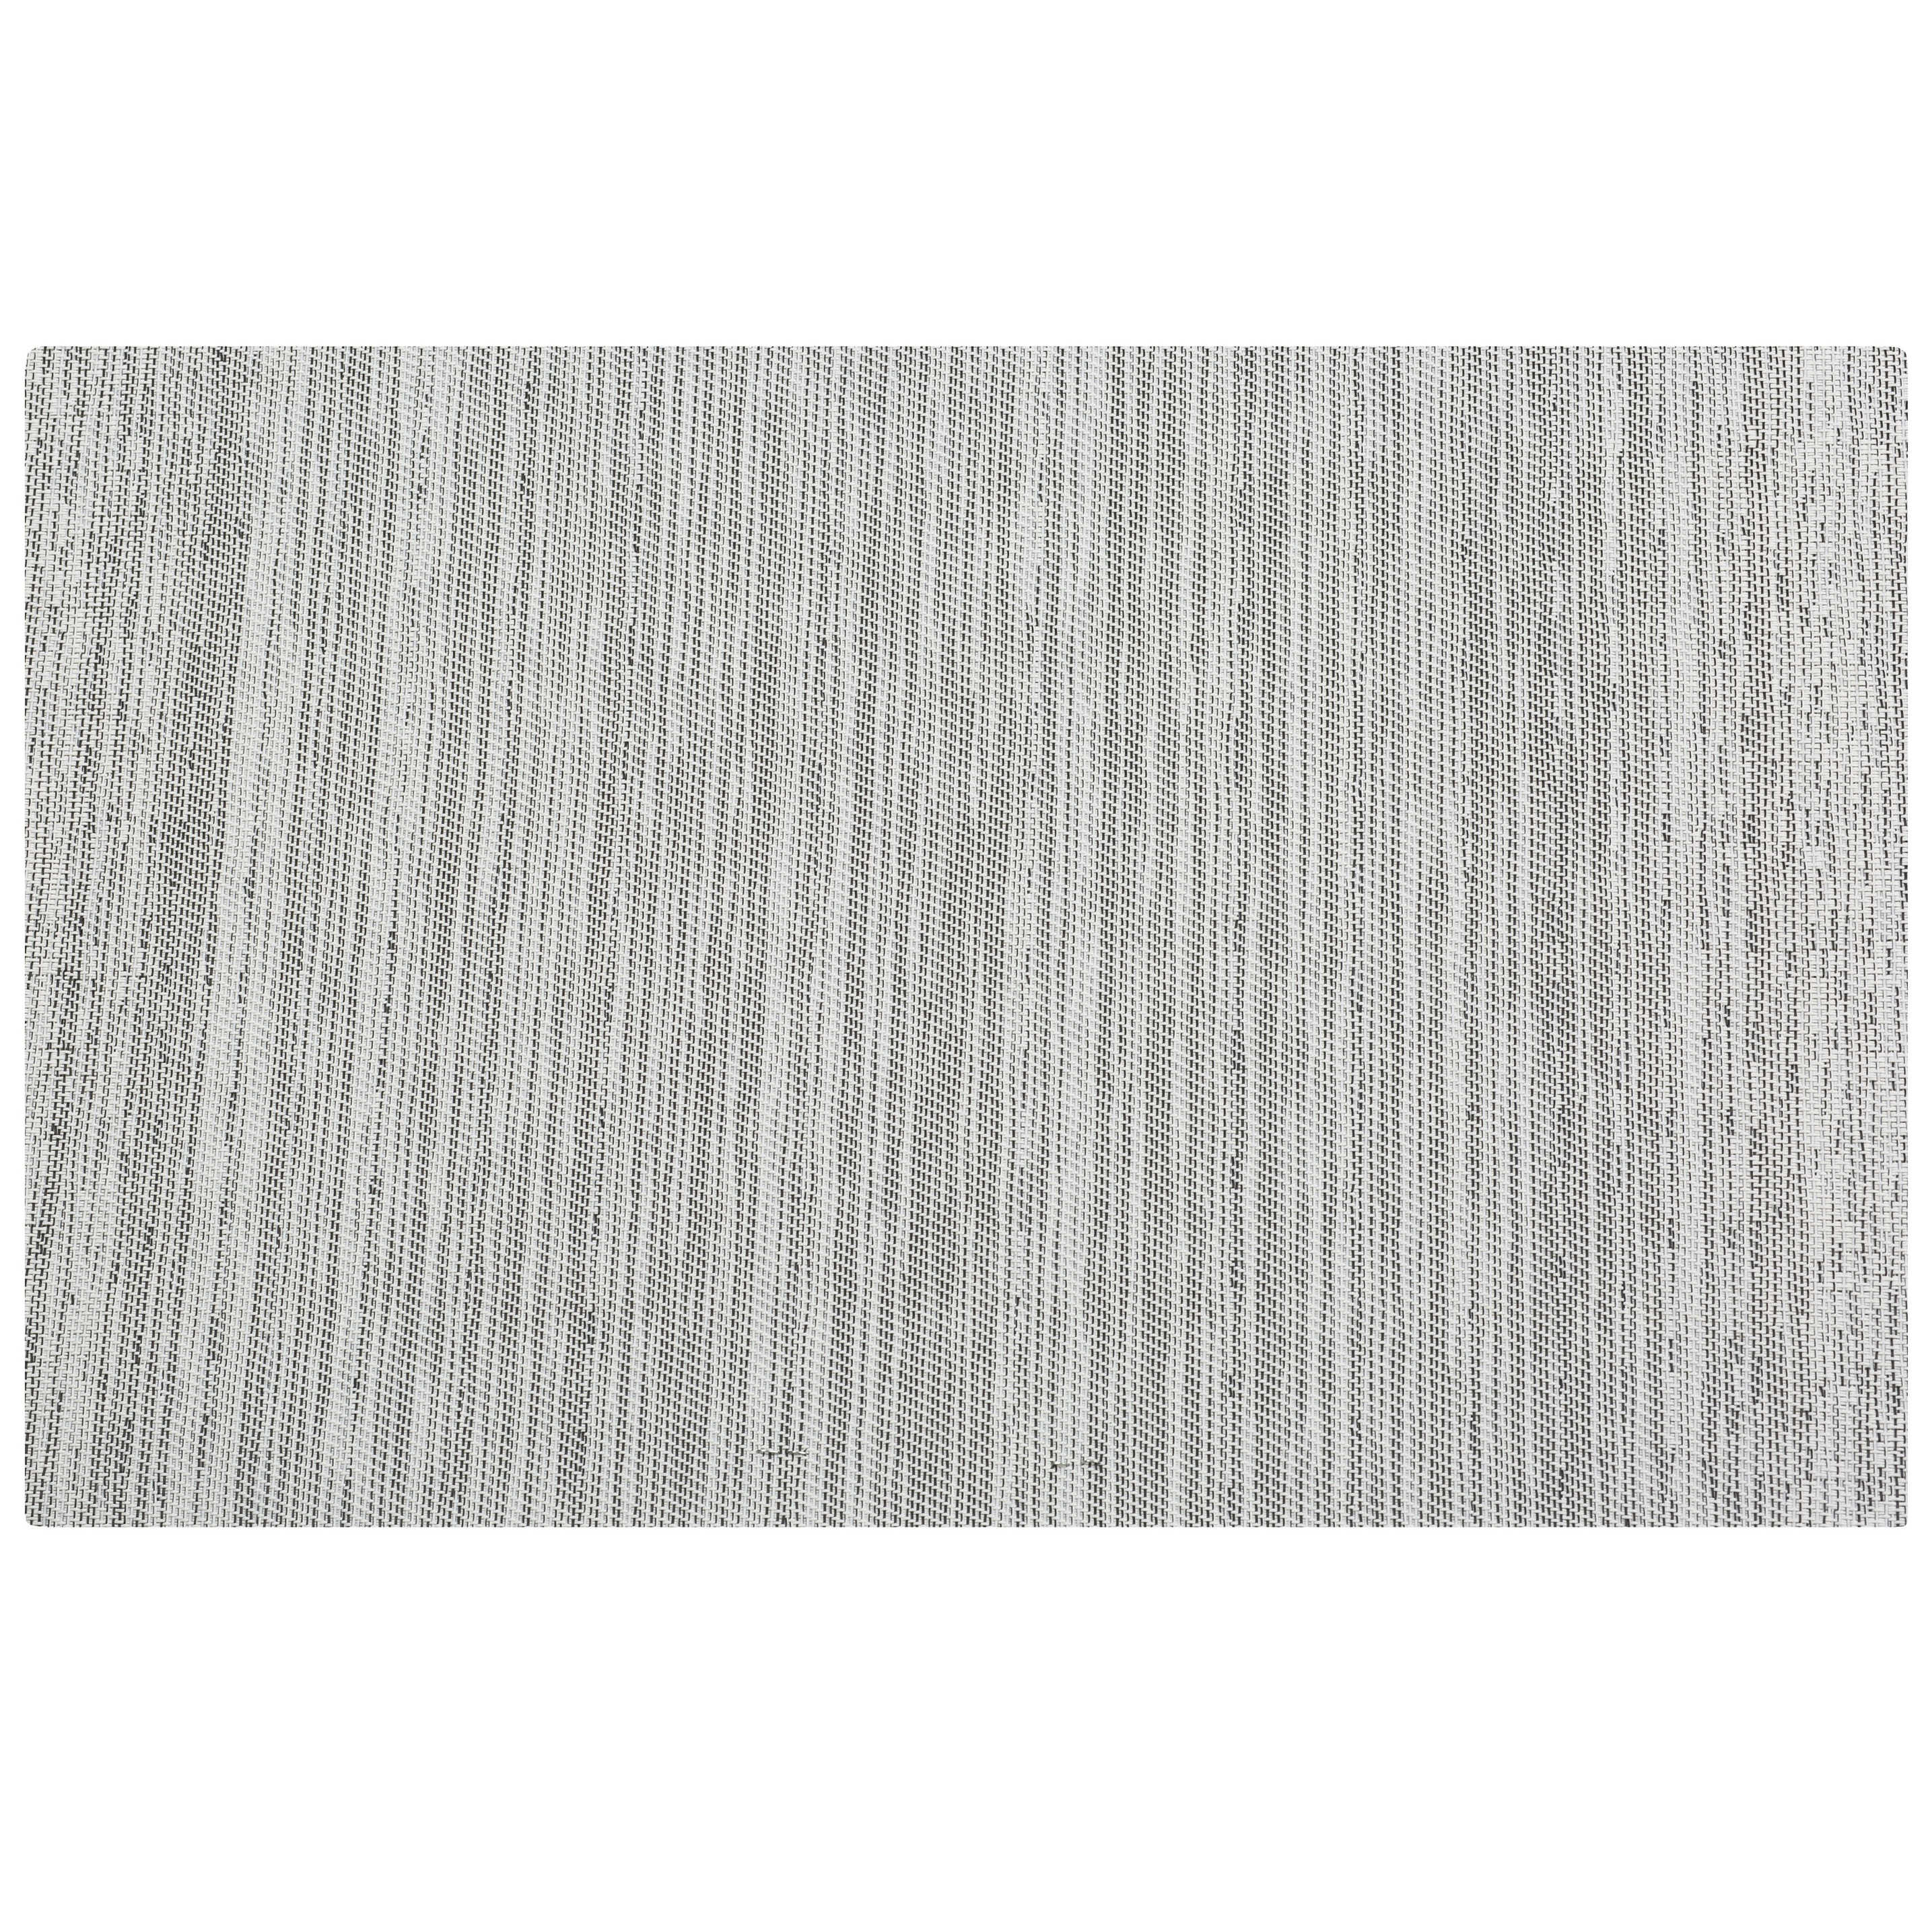 1x Rechthoekige onderzetters-placemats voor borden zwart-wit geweven print 30 x 45 cm